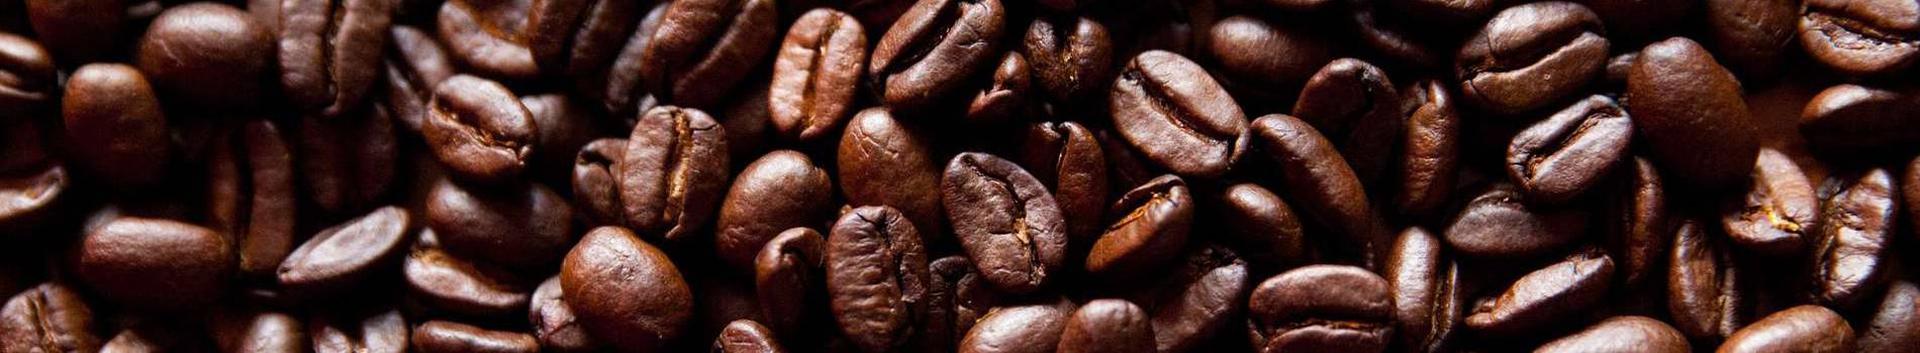 Suurim mainega ettevõte COFFEE CRYSTAL OÜ, maineskoor 530, aktiivseid äriseoseid 2. Tegutseb peamiselt valdkonnas: Tee ja kohvi töötlemine.